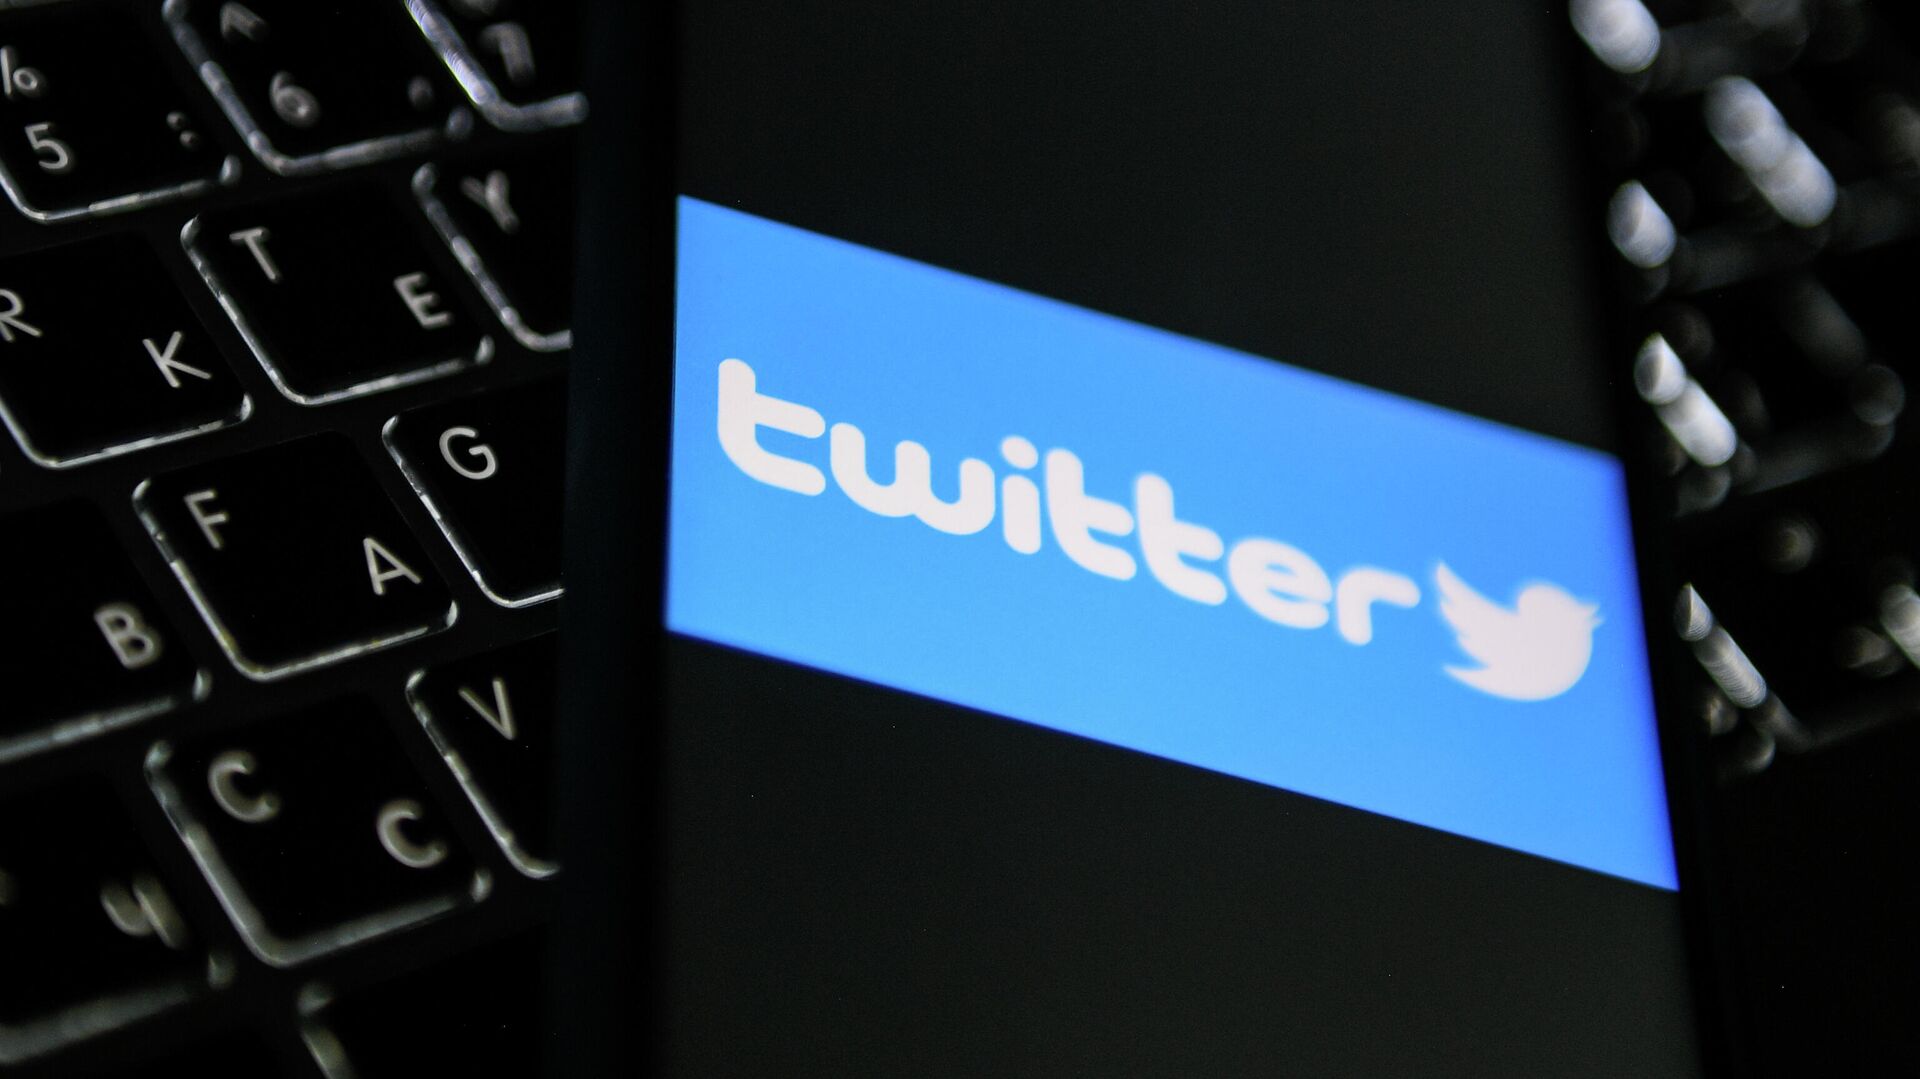 Twitter во Франции обжаловал решение суда о борьбе с разжиганием ненависти